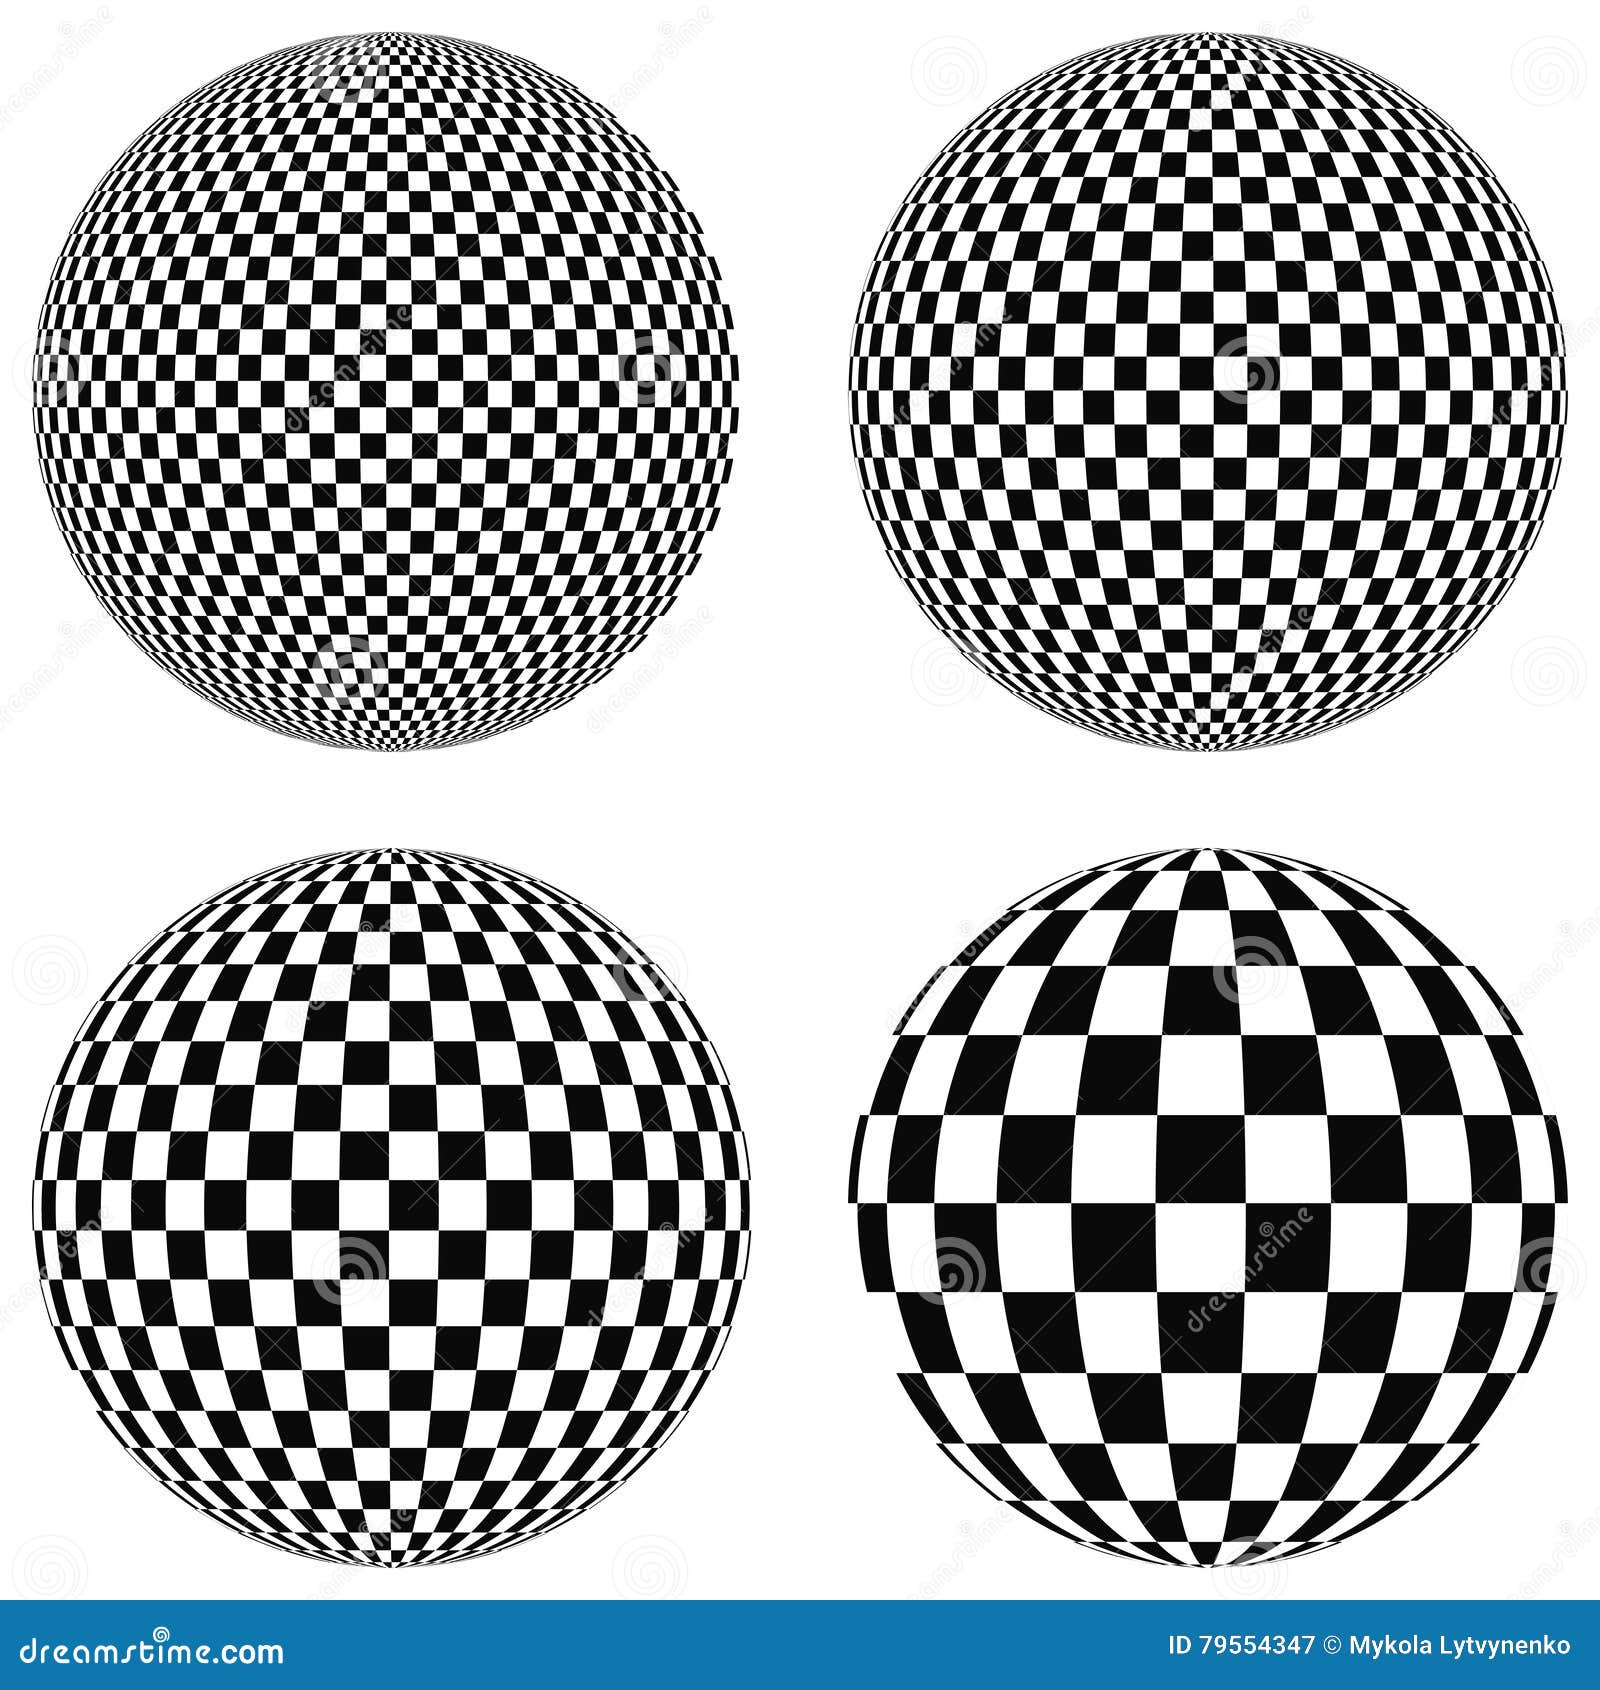 Предметы по форме круга черно-белые. Шар 3d без фона. Вектор сфера Графика. Рисунок объëмных кругов на шахматнлм оне. Check balls